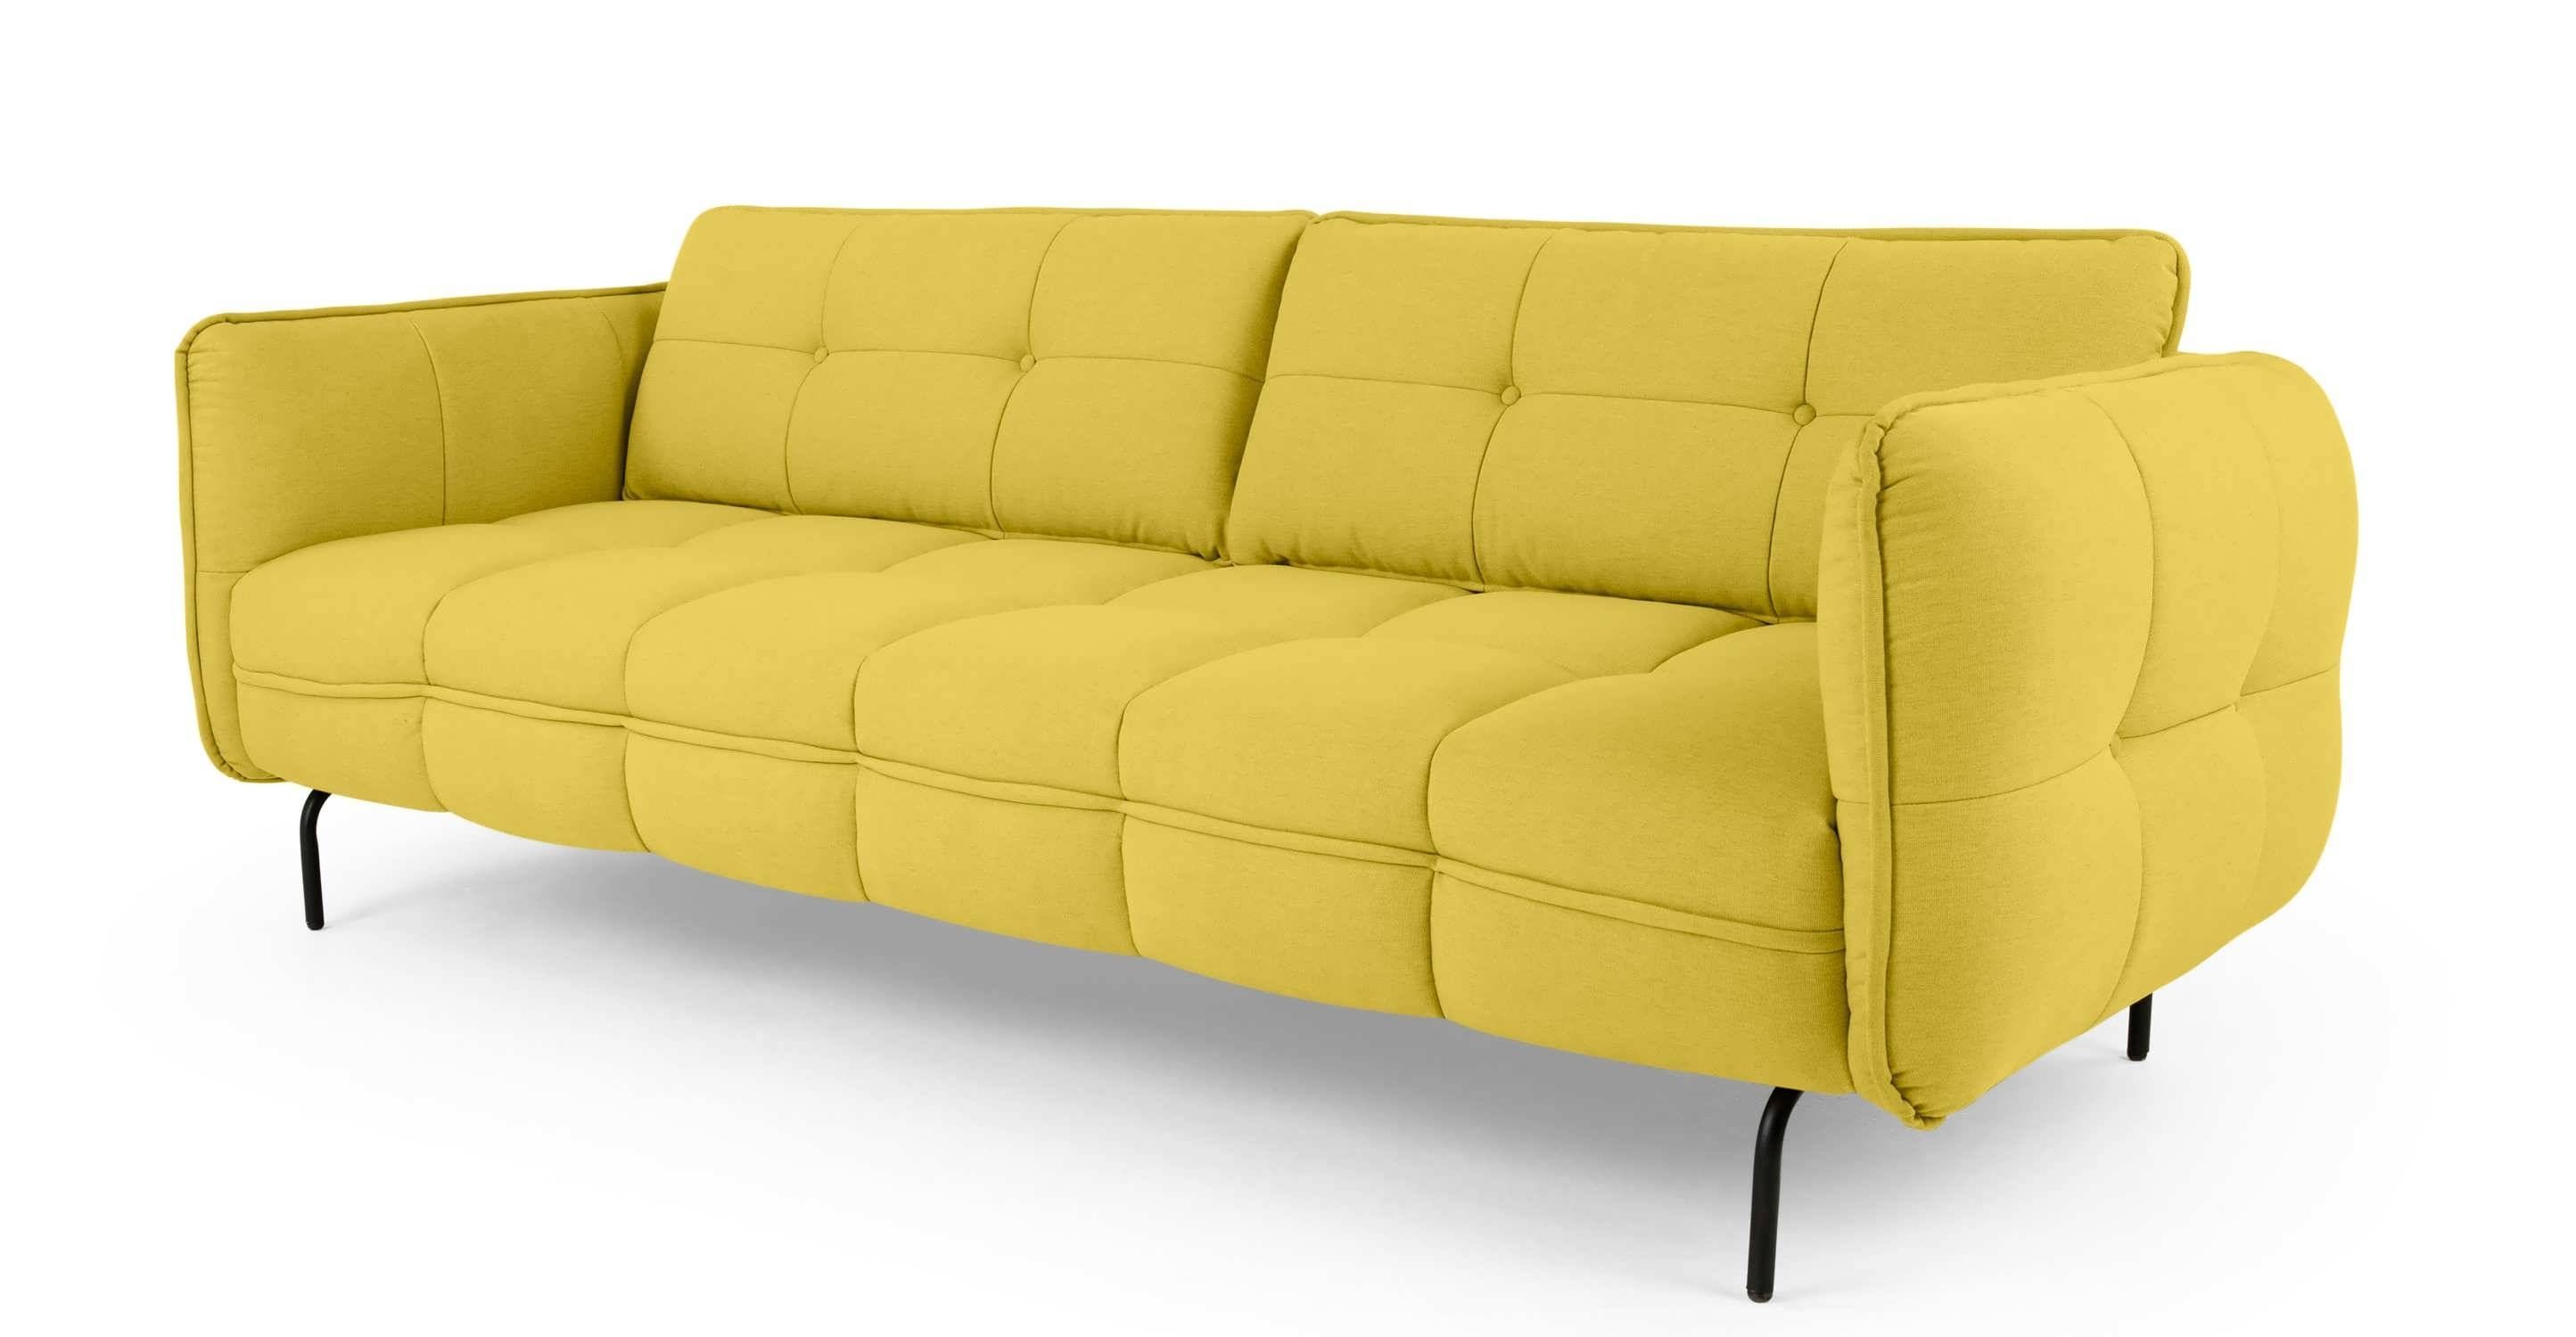 Sofa : Modern Sectional Sofas Contemporary Sofa Sectional Sofa Bed Within Shabby Chic Sectional Sofas (View 13 of 15)